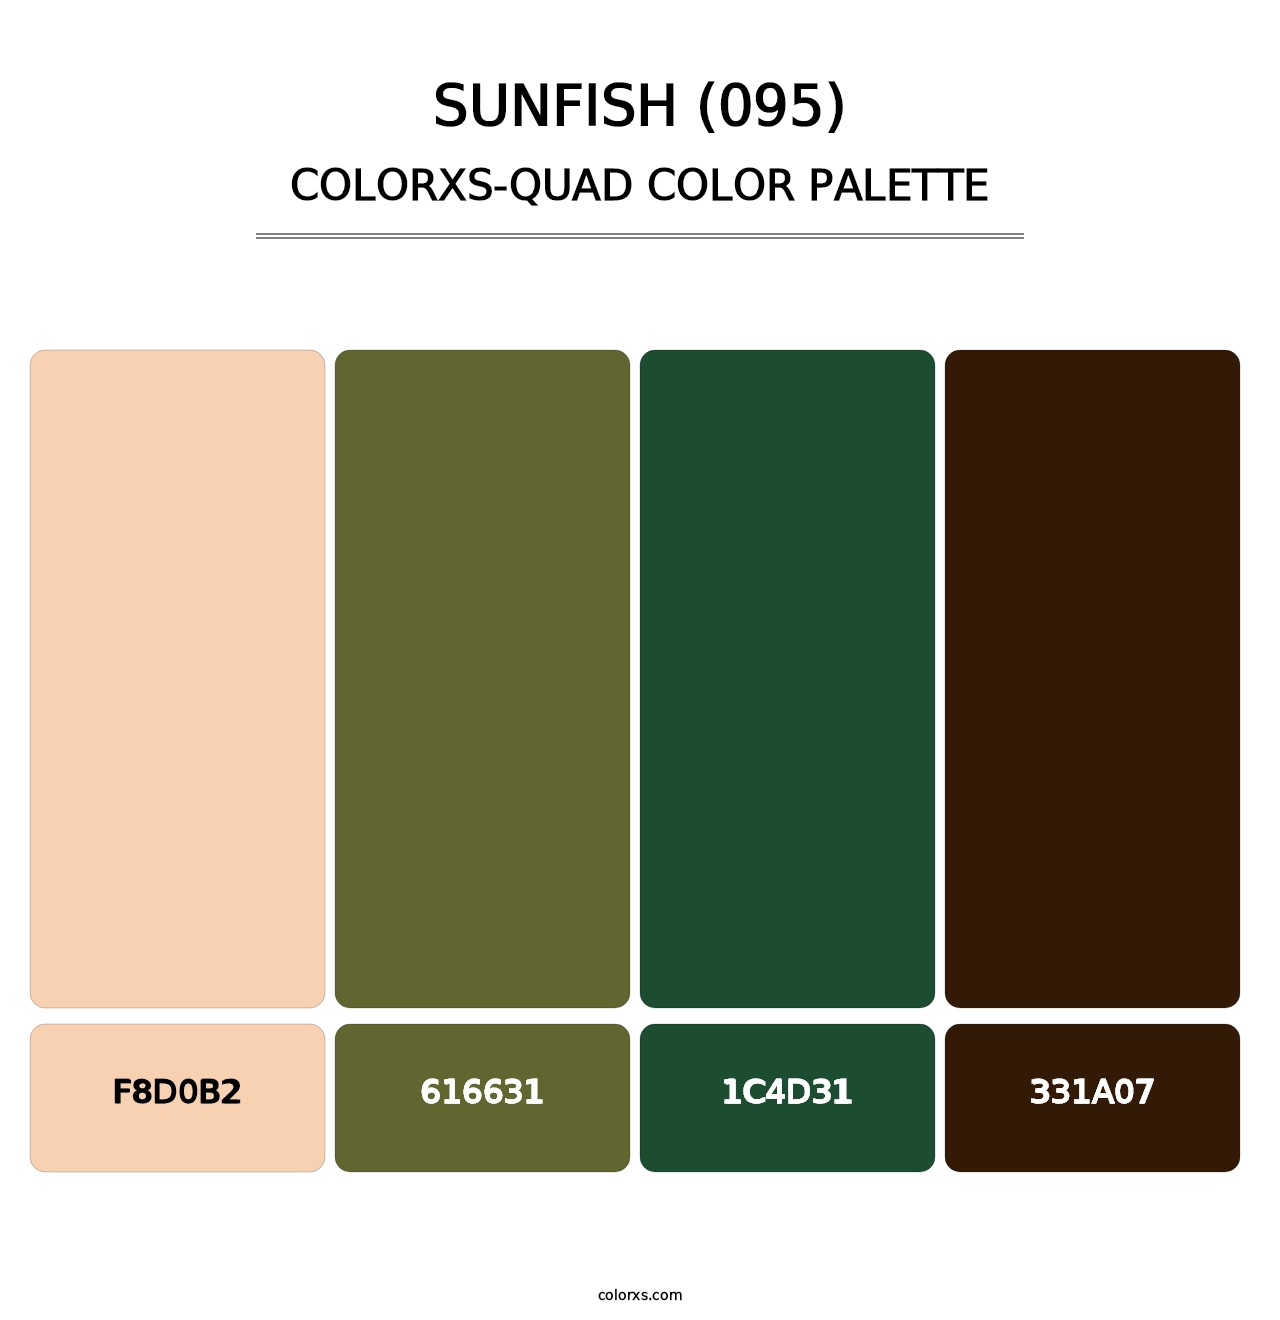 Sunfish (095) - Colorxs Quad Palette